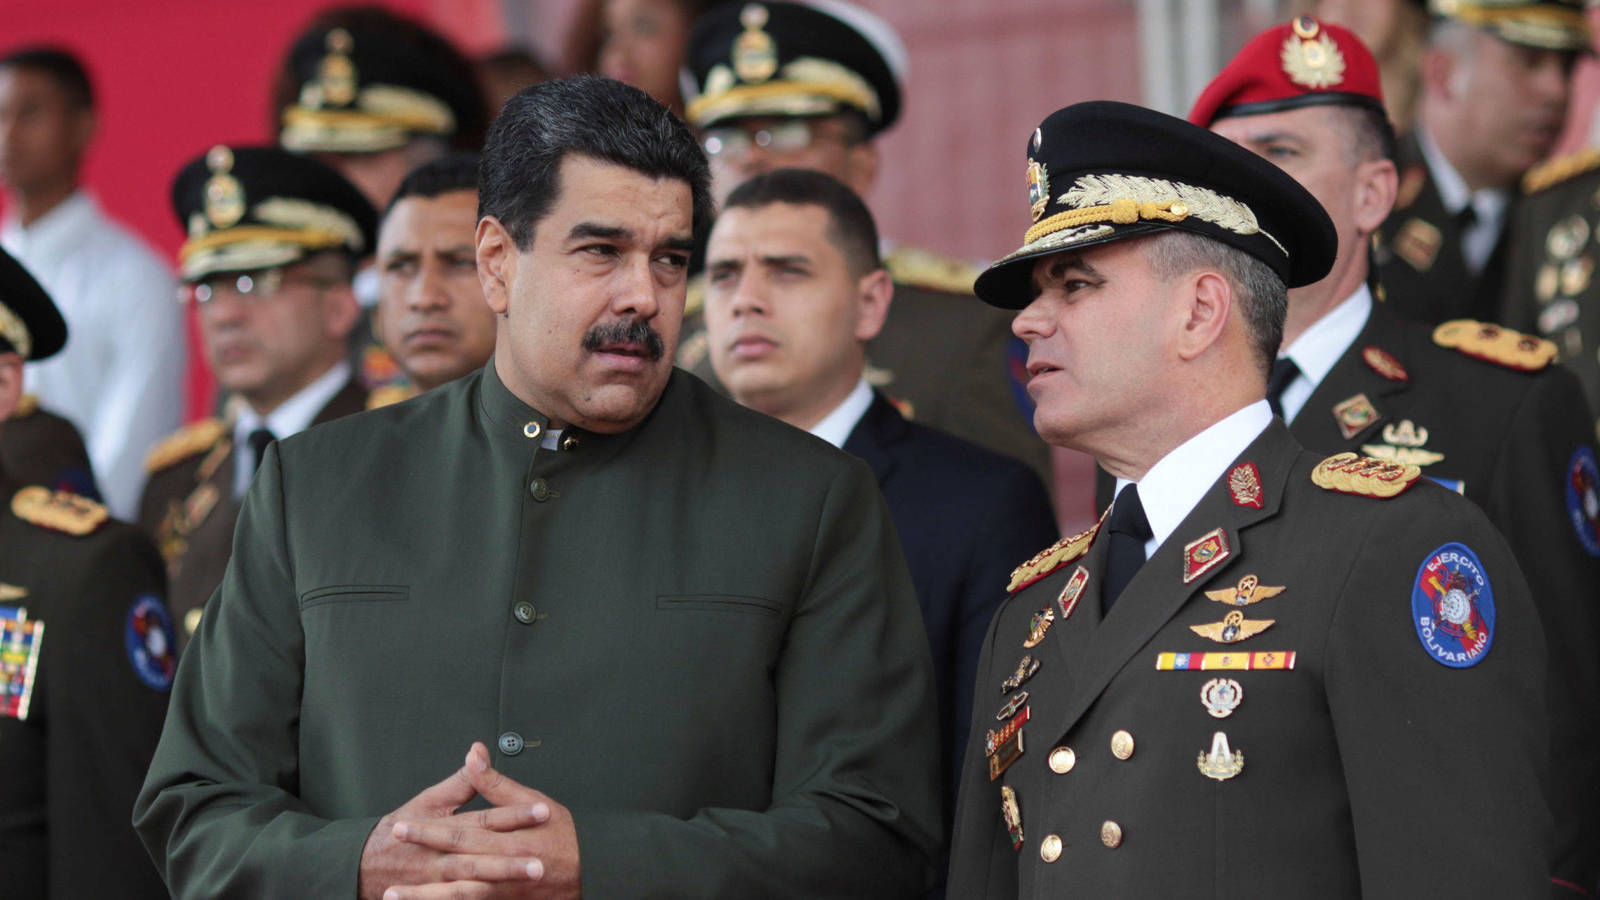 EN CLAVES: Informe de la Misión Internacional de la ONU que responsabiliza de crímenes a Maduro y a los ministros del Interior y Defensa